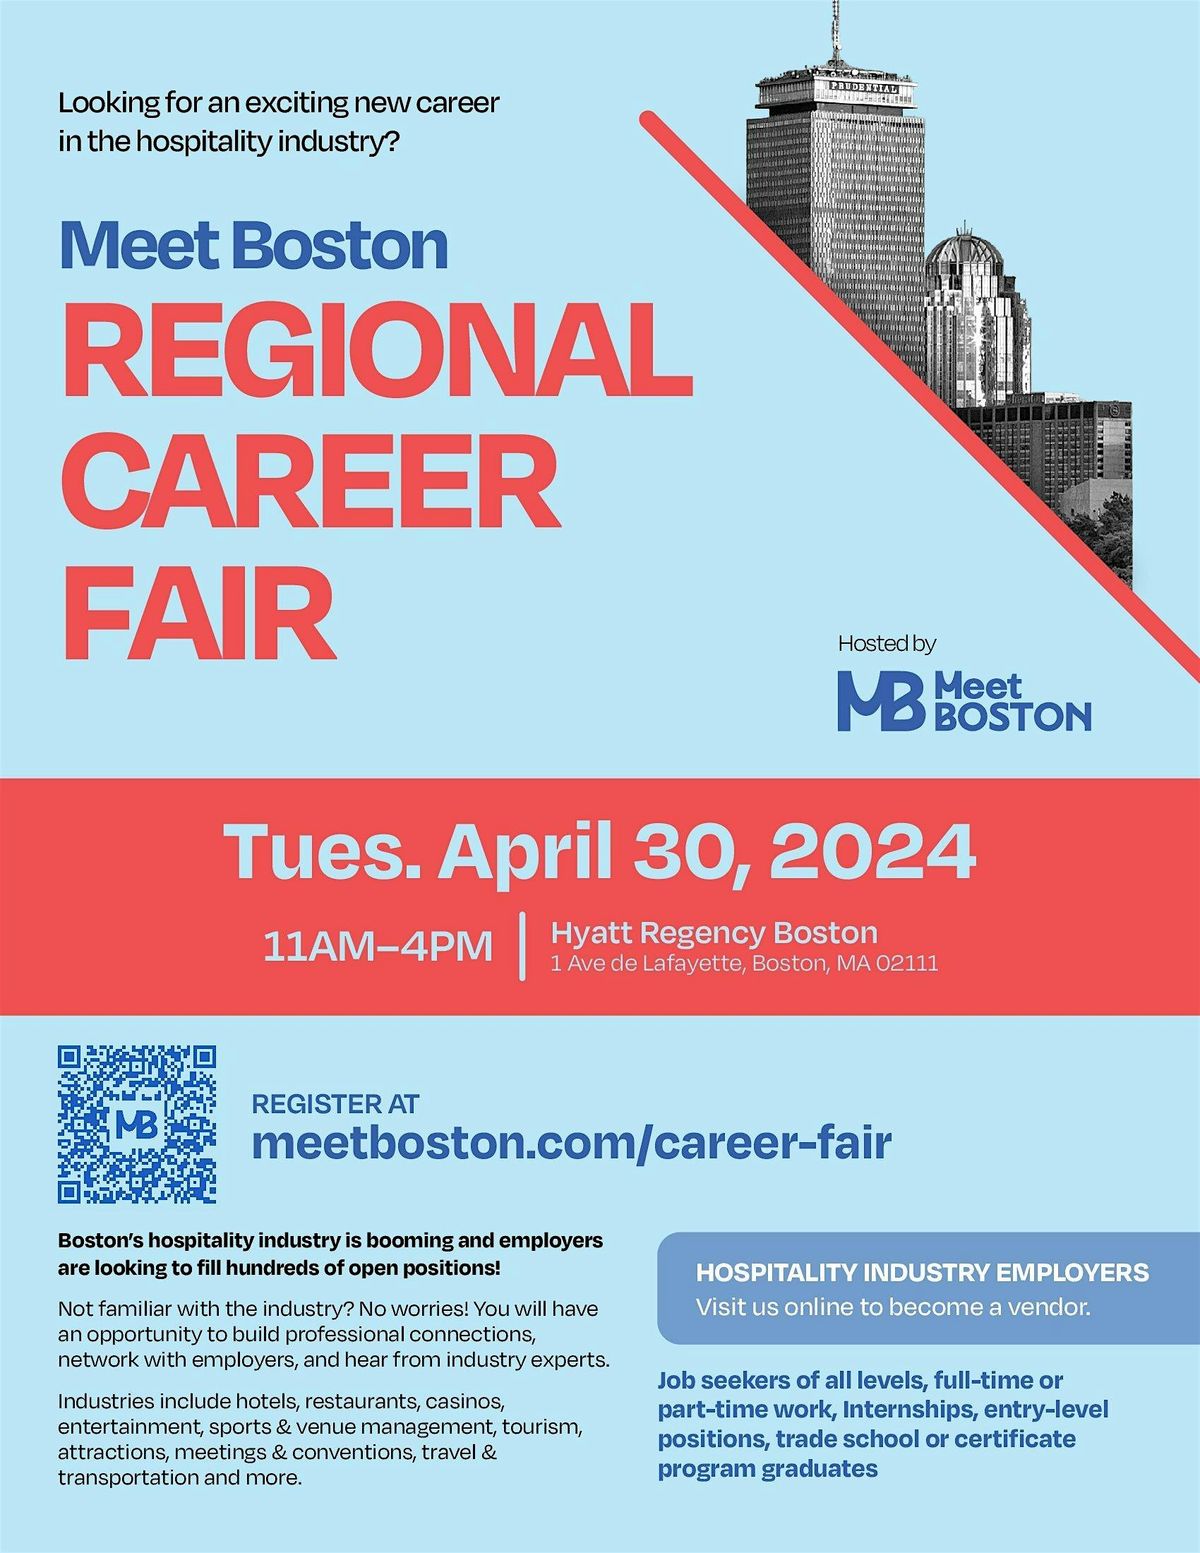 Meet Boston 2024 Regional Career Fair